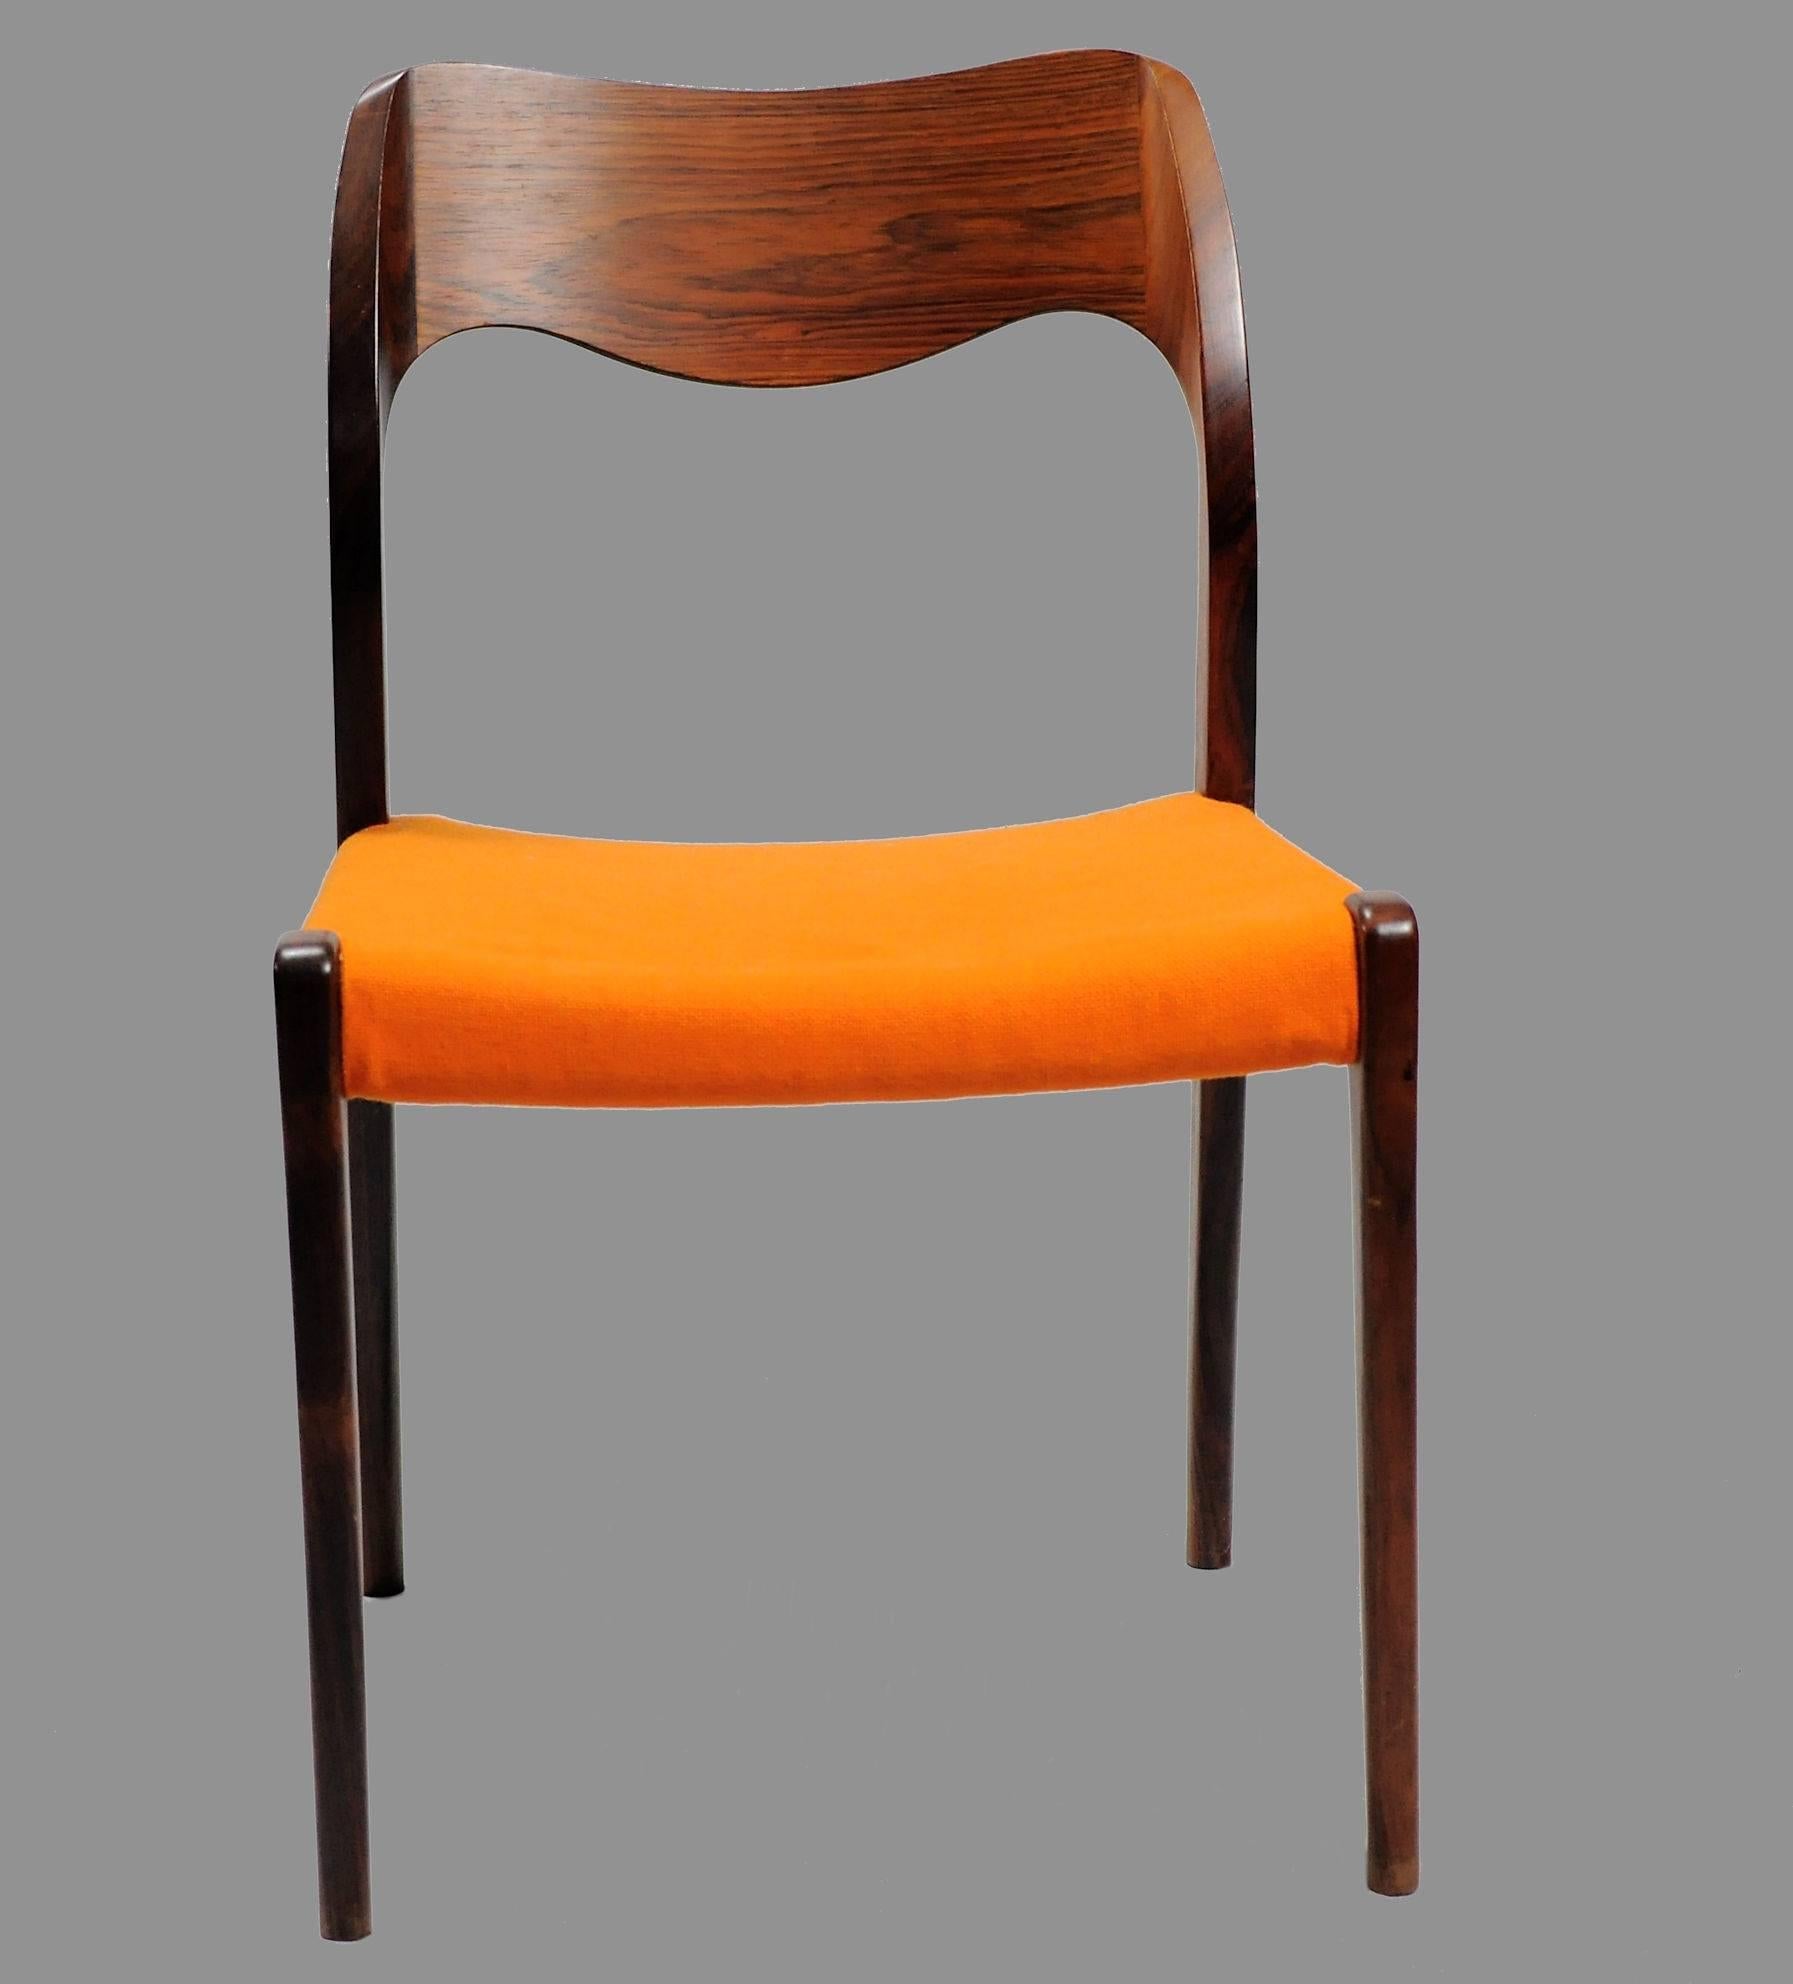 Ensemble de 12 chaises de salle à manger modèle 71 en bois de rose, conçues par Niels Otto Møller en 1951.

Les chaises sont dotées d'un cadre et d'un dossier solides en bois de rose, avec des pieds droits et un élégant dossier de forme organique